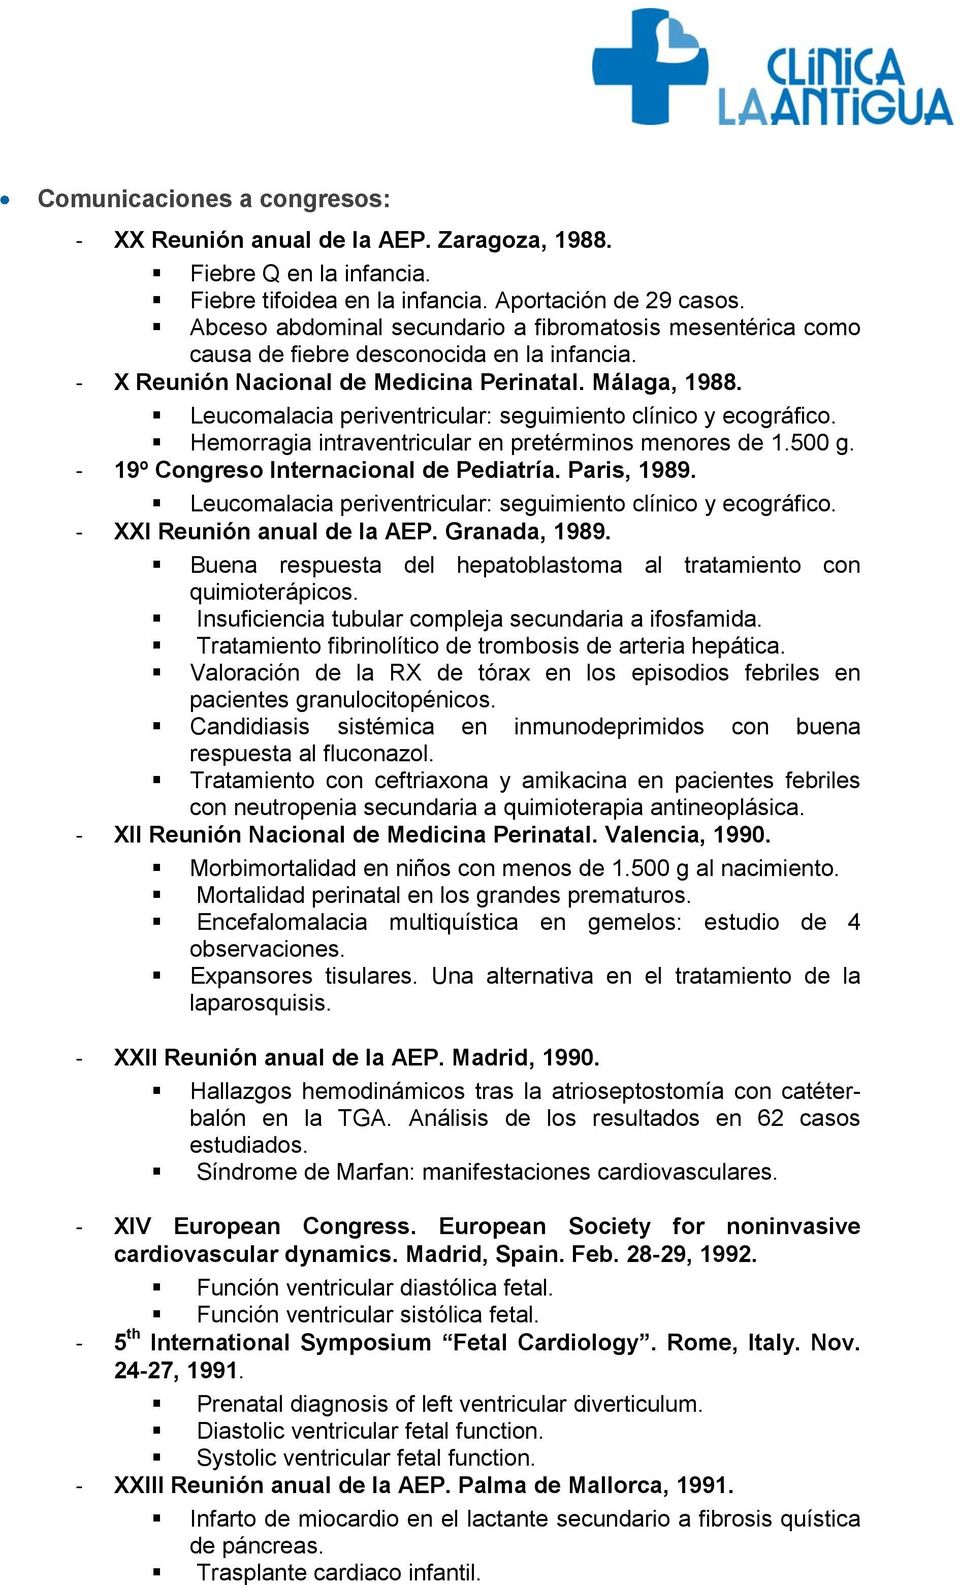 Leucomalacia periventricular: seguimiento clínico y ecográfico. Hemorragia intraventricular en pretérminos menores de 1.500 g. - 19º Congreso Internacional de Pediatría. Paris, 1989.